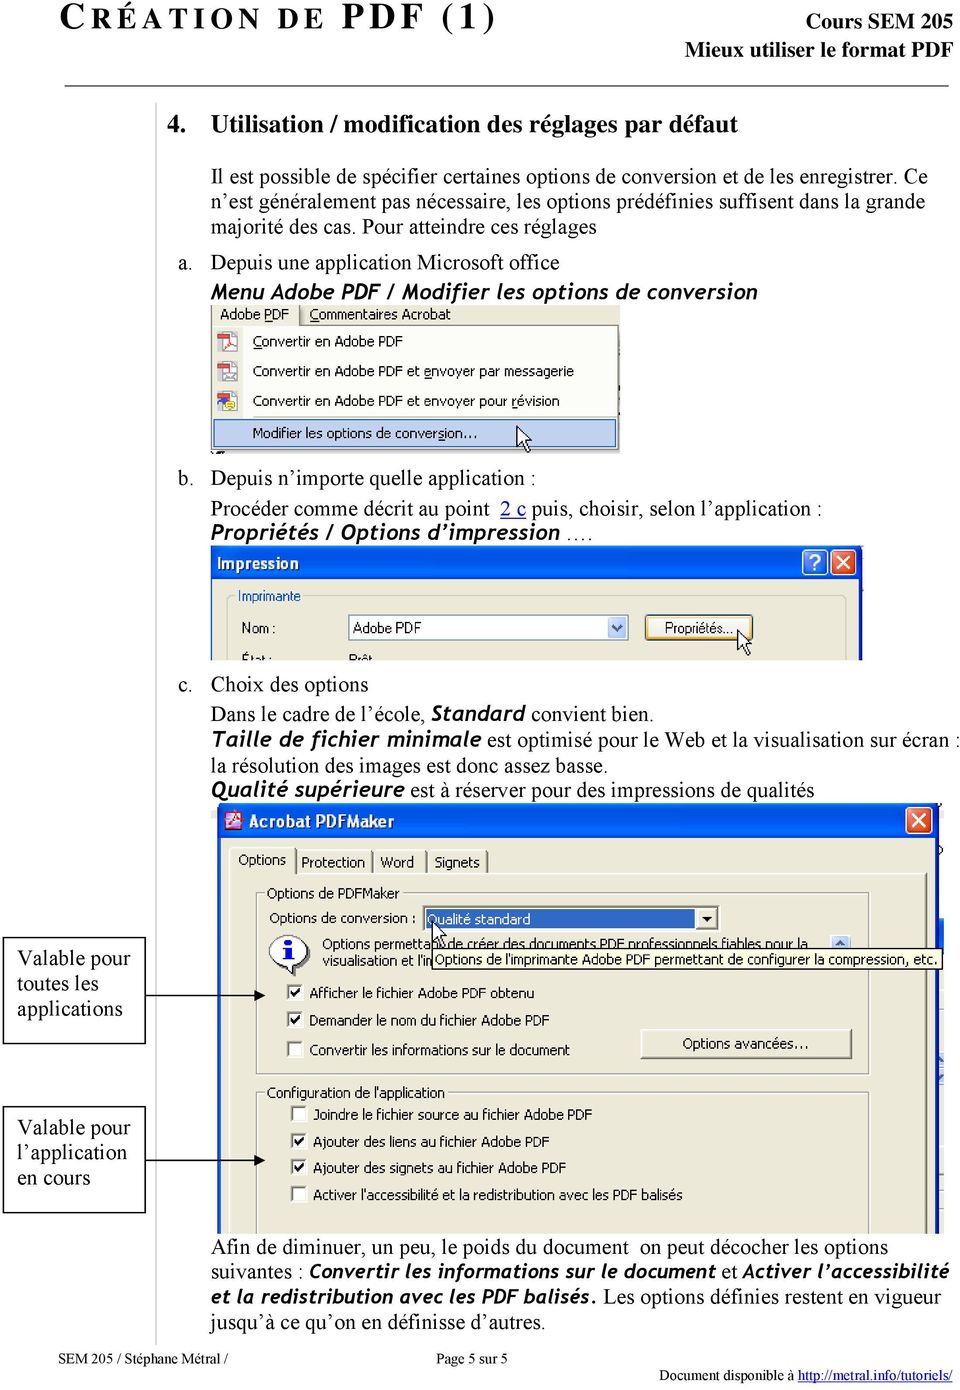 Depuis une application Microsoft office Menu Adobe PDF / Modifier les options de conversion b.